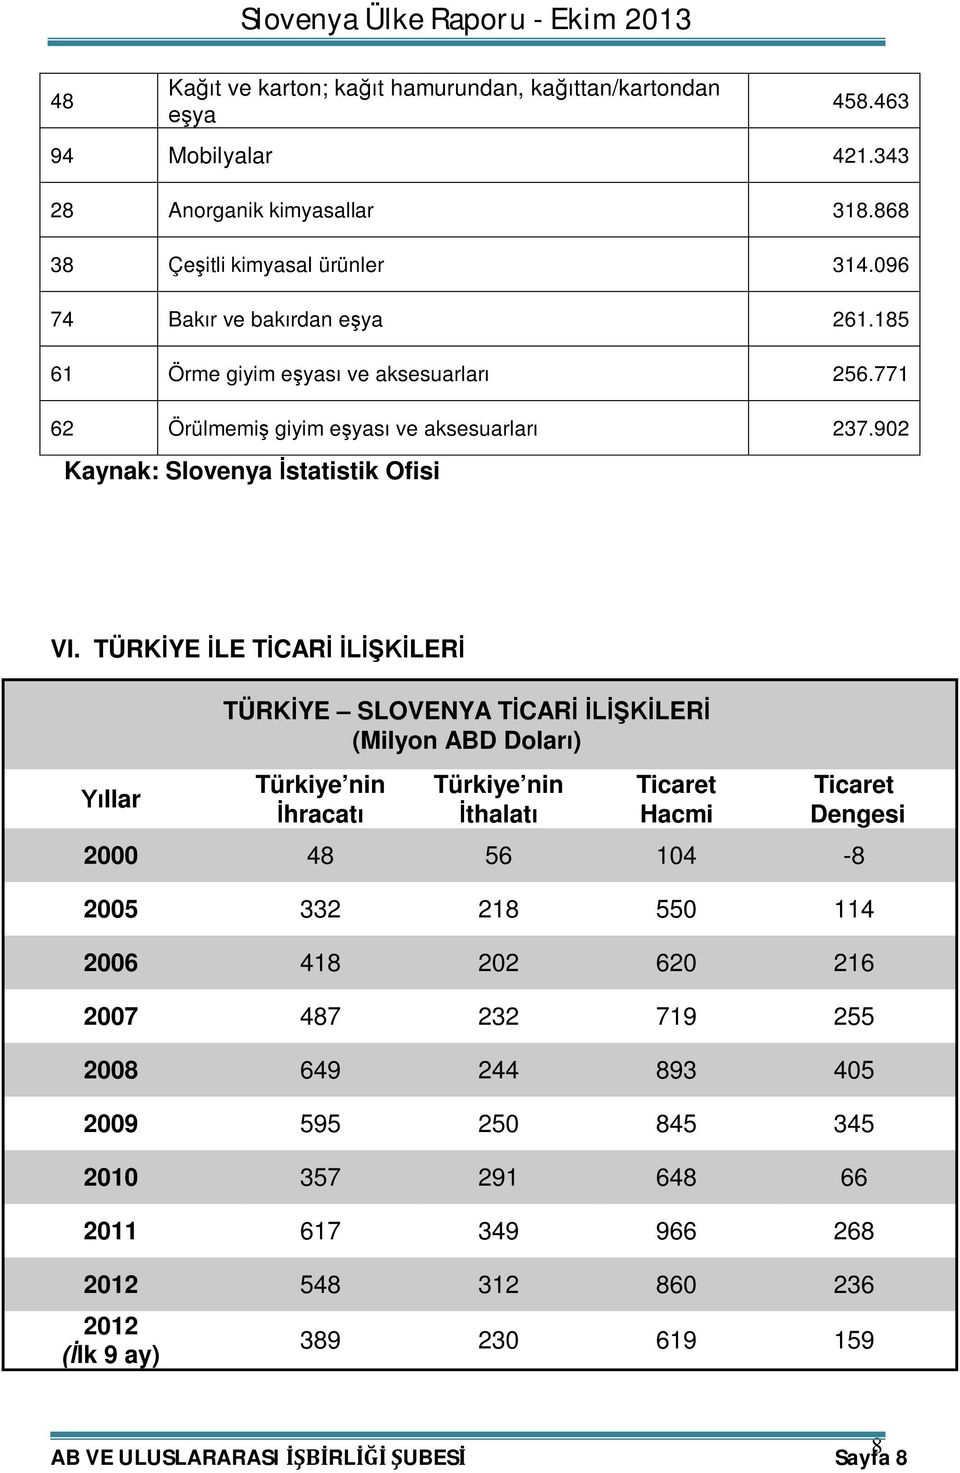 TÜRKİYE İLE TİCARİ İLİŞKİLERİ Yıllar TÜRKİYE SLOVENYA TİCARİ İLİŞKİLERİ (Milyon ABD Doları) Türkiye nin İhracatı Türkiye nin İthalatı Ticaret Hacmi Ticaret Dengesi 2000 48 56 104-8 2005